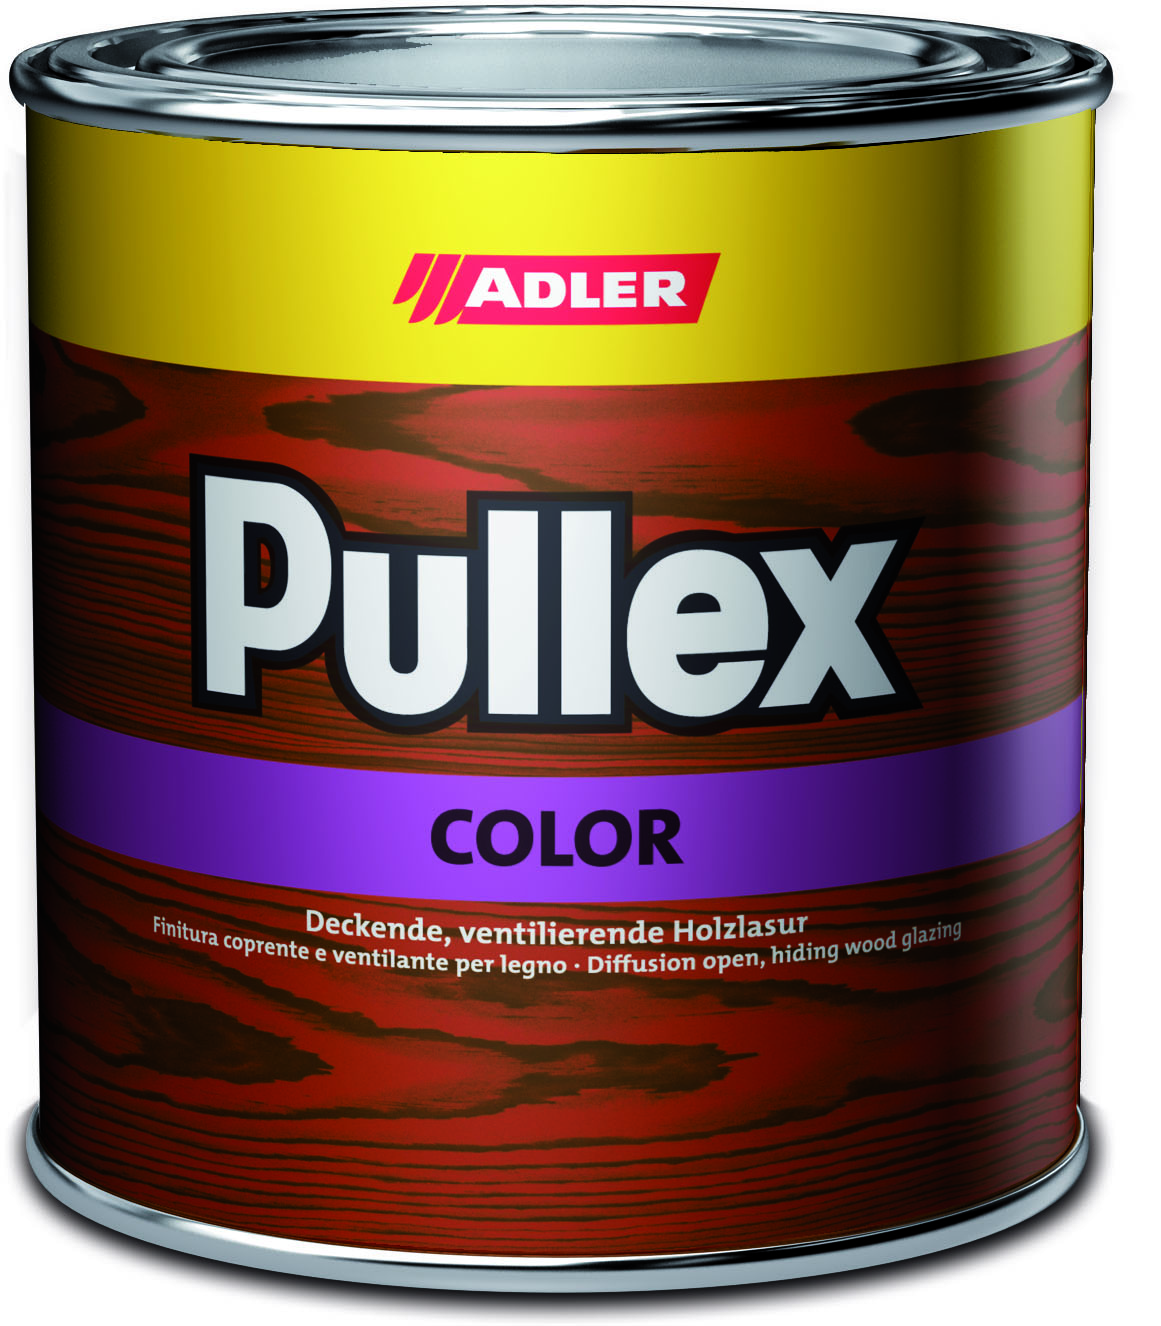 ADLER PULLEX COLOR - Ochranná farba na drevo do exteriéru 10 l ral 8001 - okrová hnedá